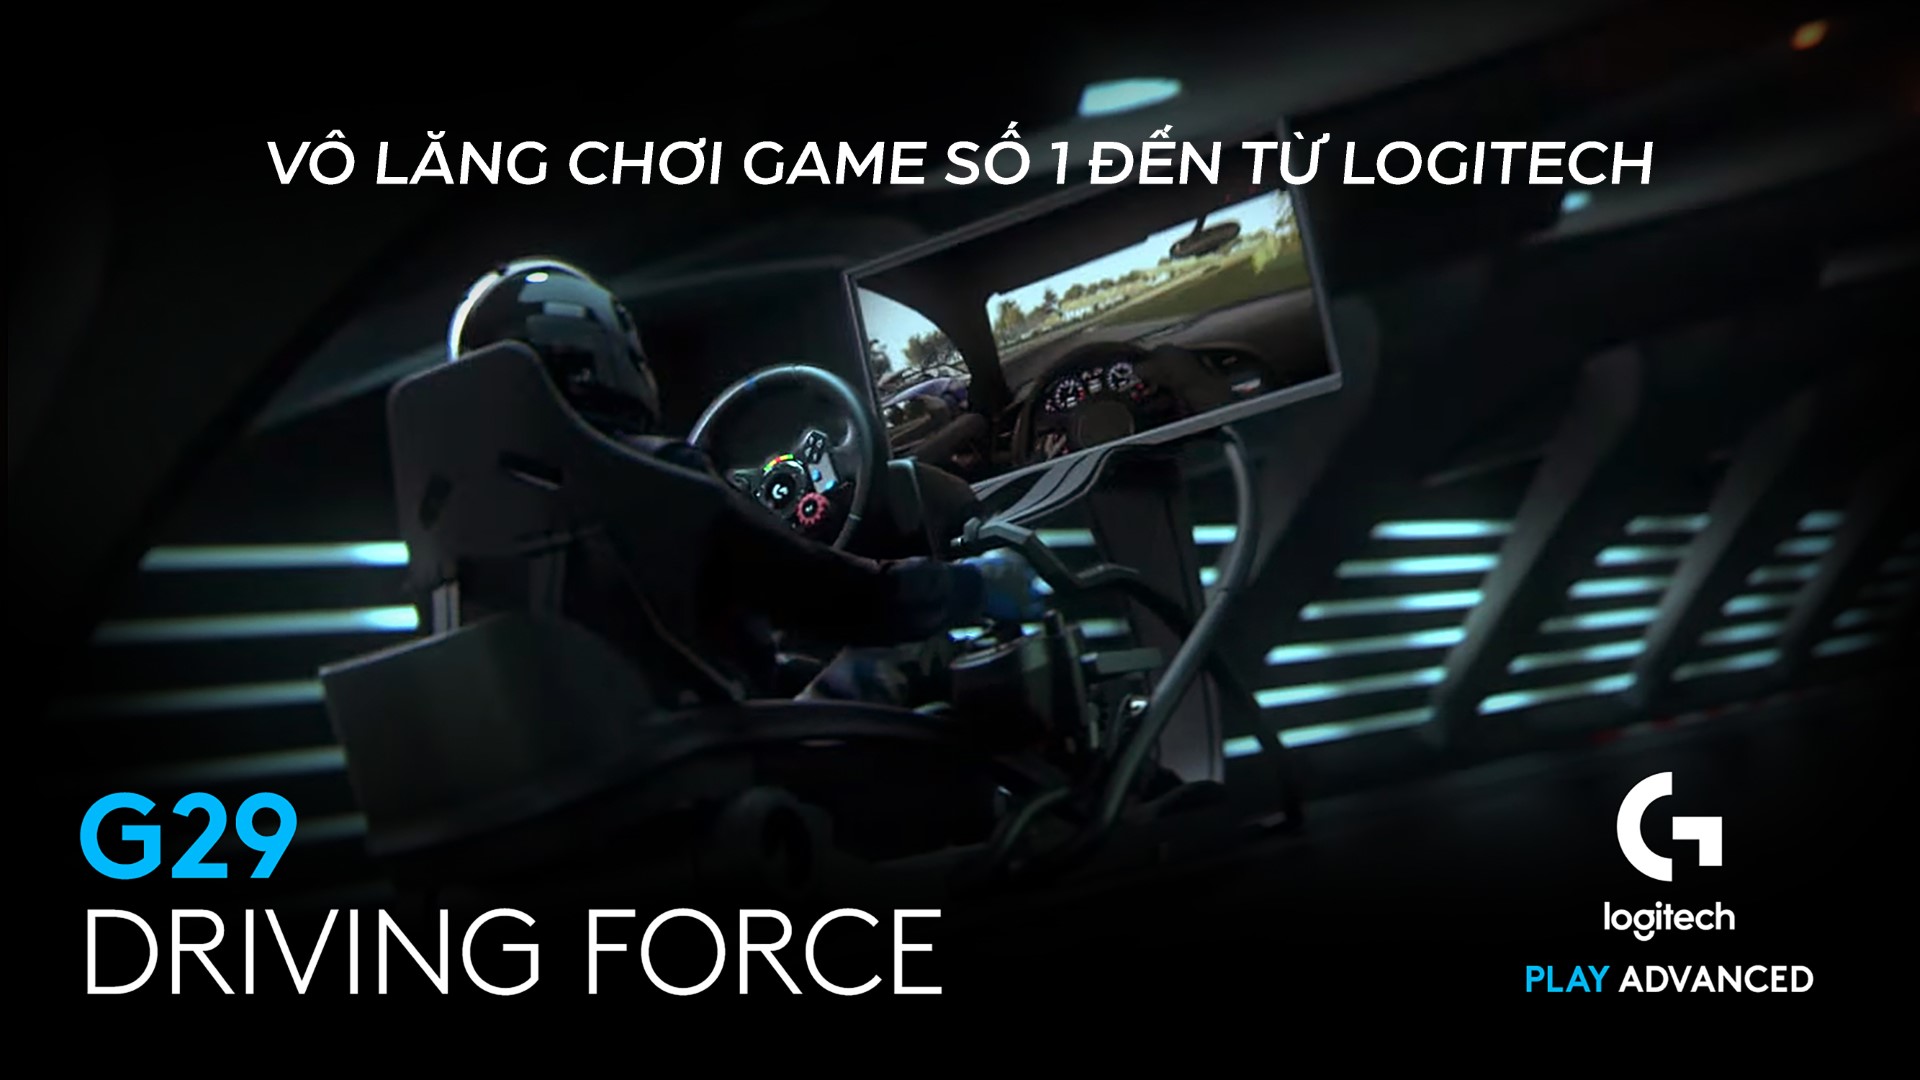 Vô Lăng chơi game Logitech G29 DRIVING FORCE